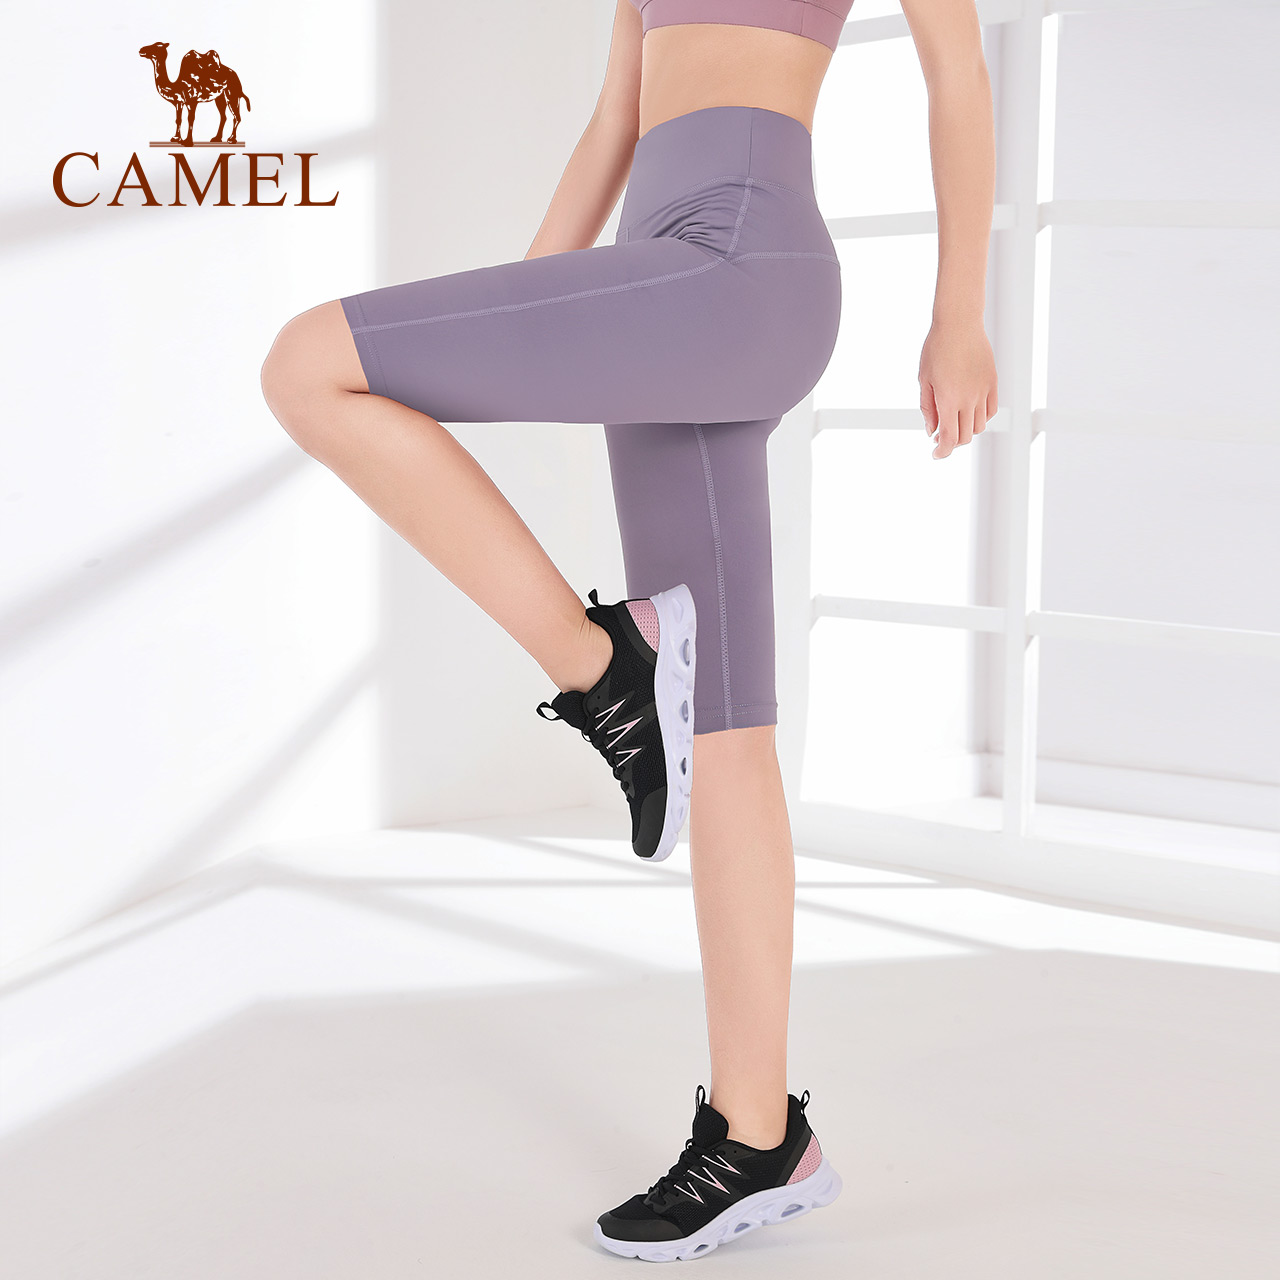 Quần thun CAMEL dài năm tấc mỏng ôm dáng phong cách đơn giản cho nữ